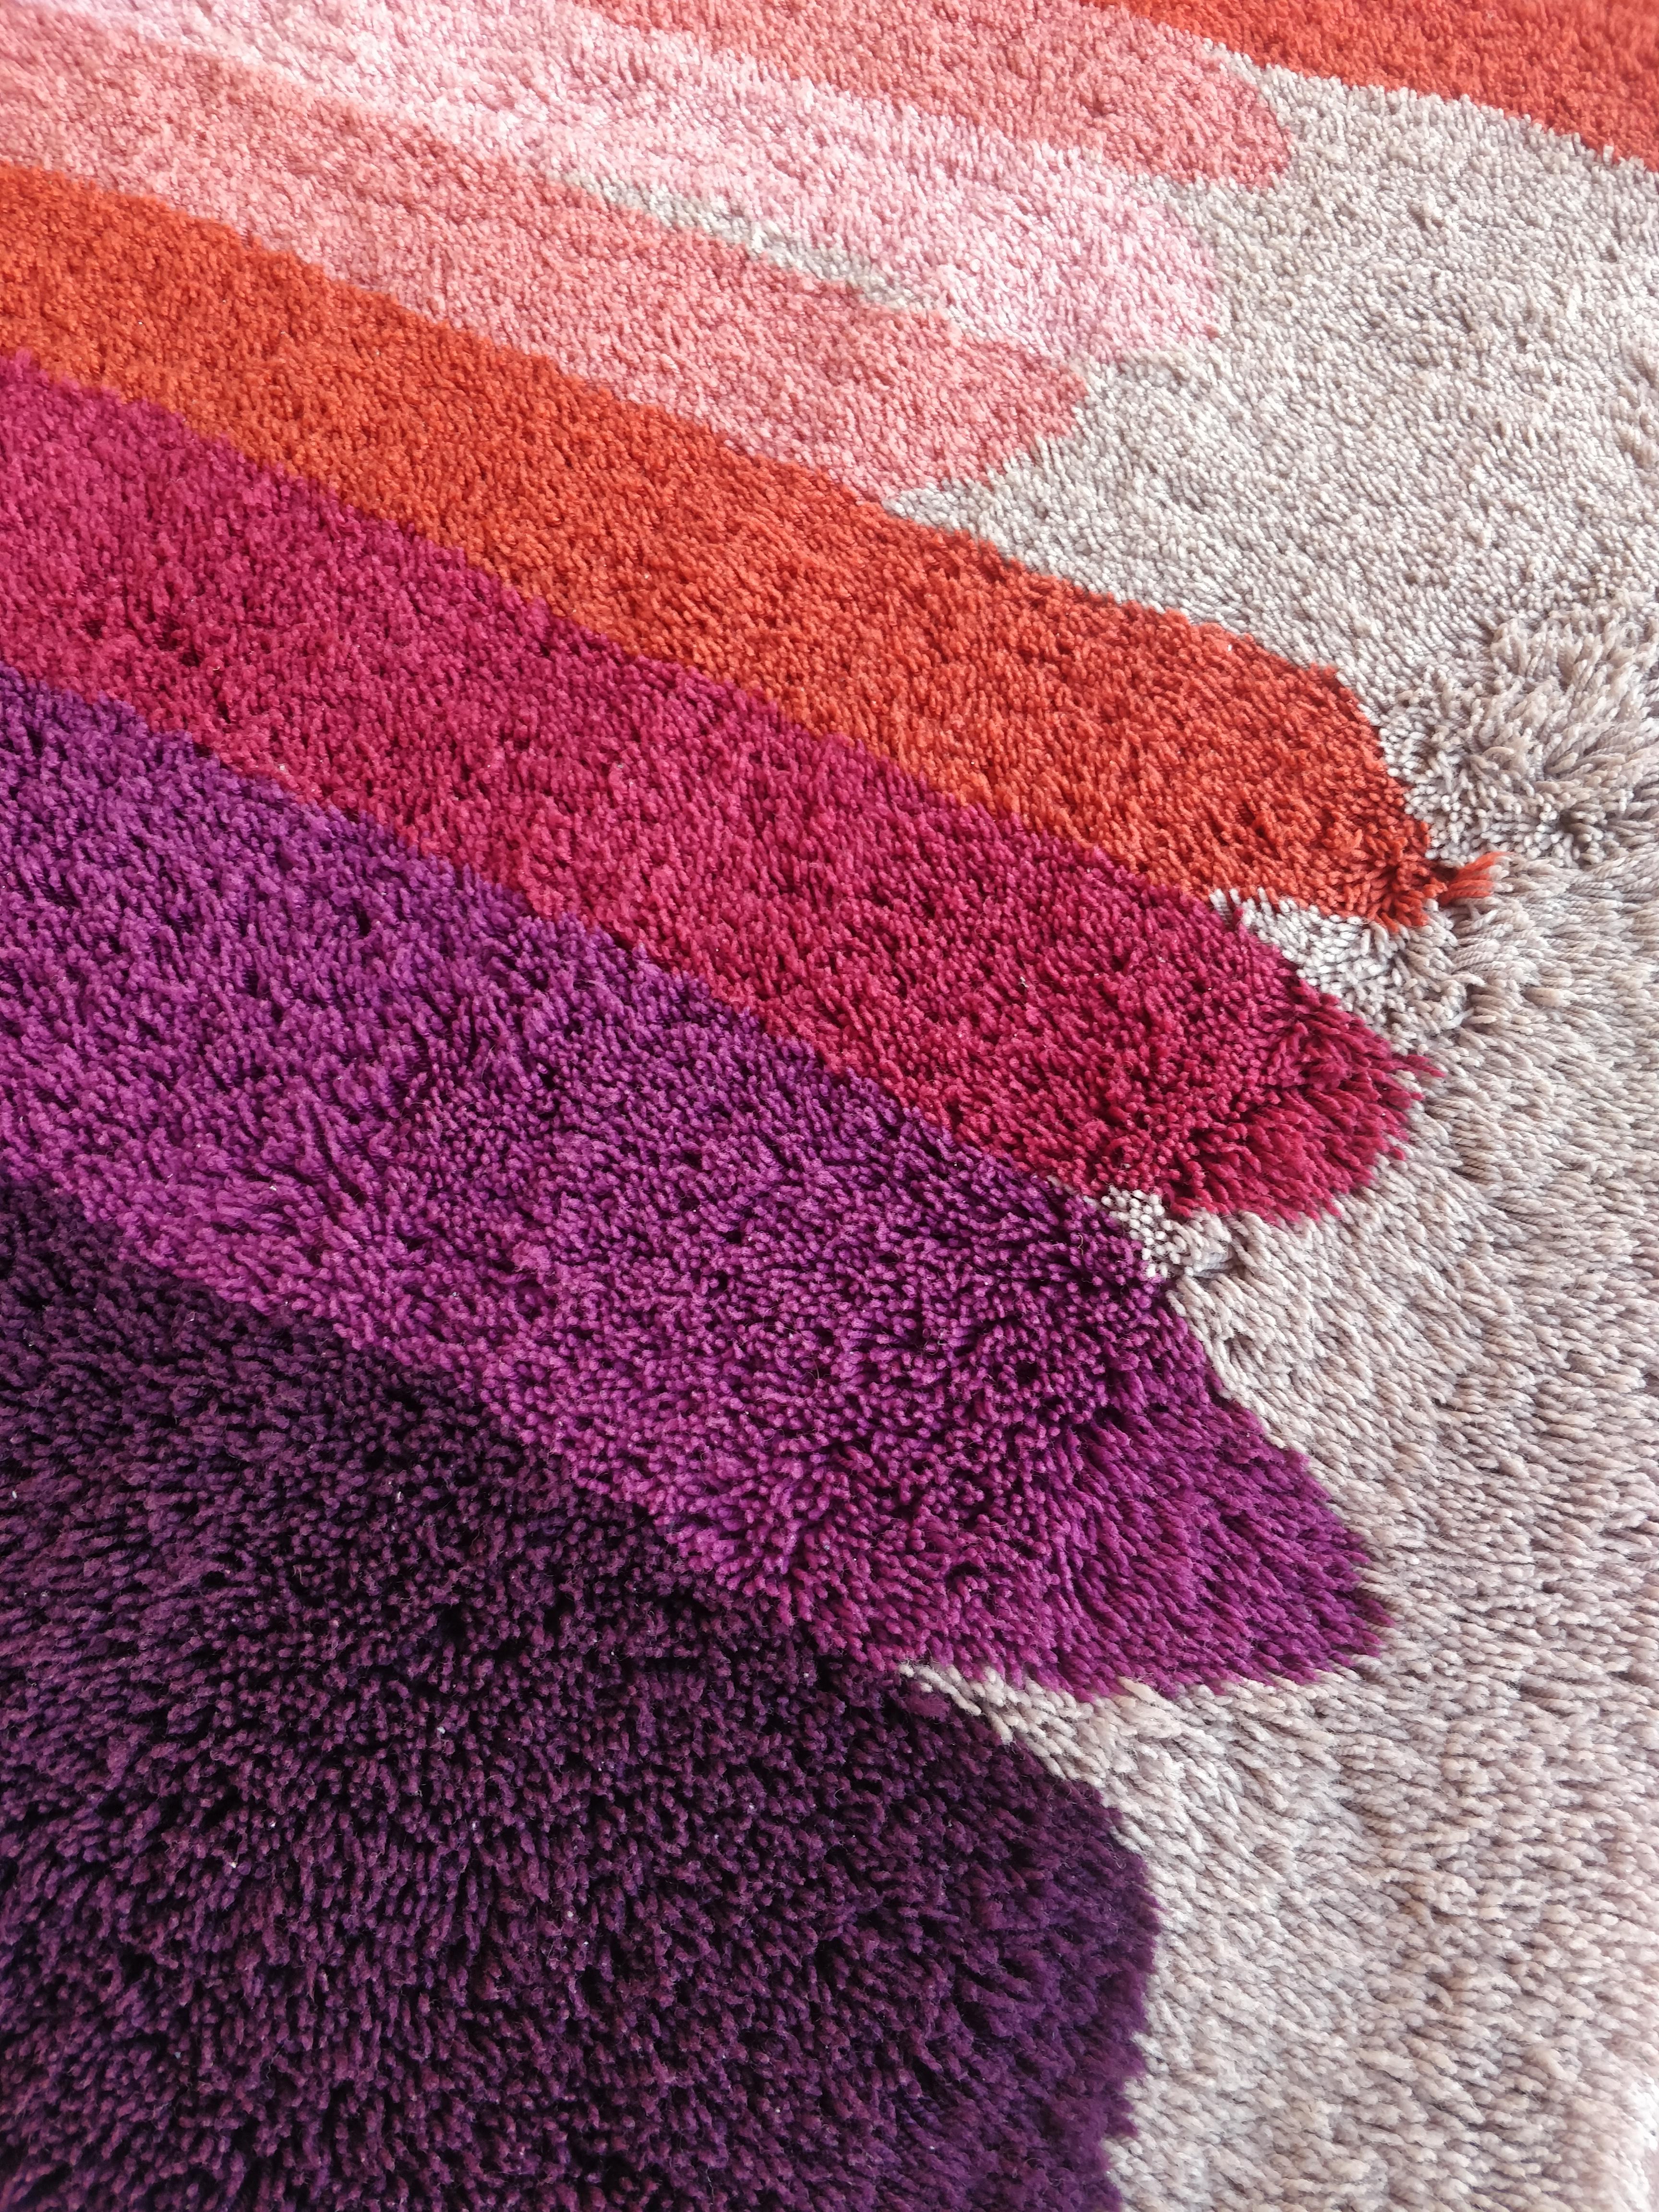 
Ce tapis vintage des années 1970, produit par Desso aux Pays-Bas, est une pièce emblématique du design pop art de l'époque. Avec ses poils hauts et son fond blanc, il crée une base lumineuse et épurée. Avec un design moderne aux rayures colorées,